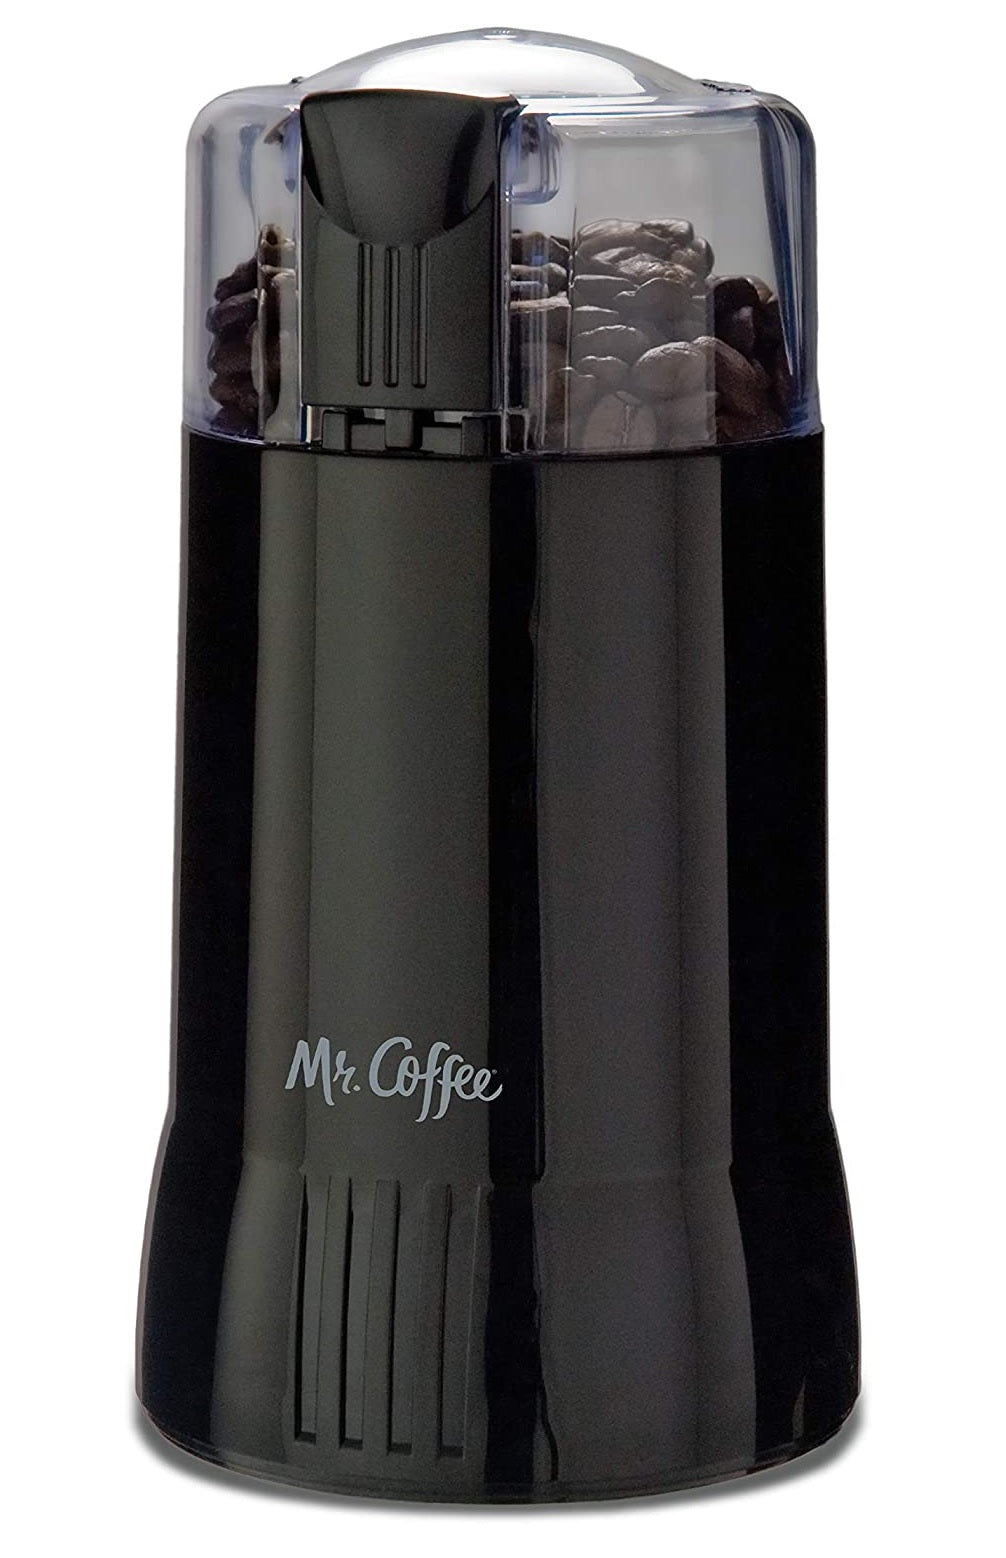 Mr. Coffee Coffee Grinders